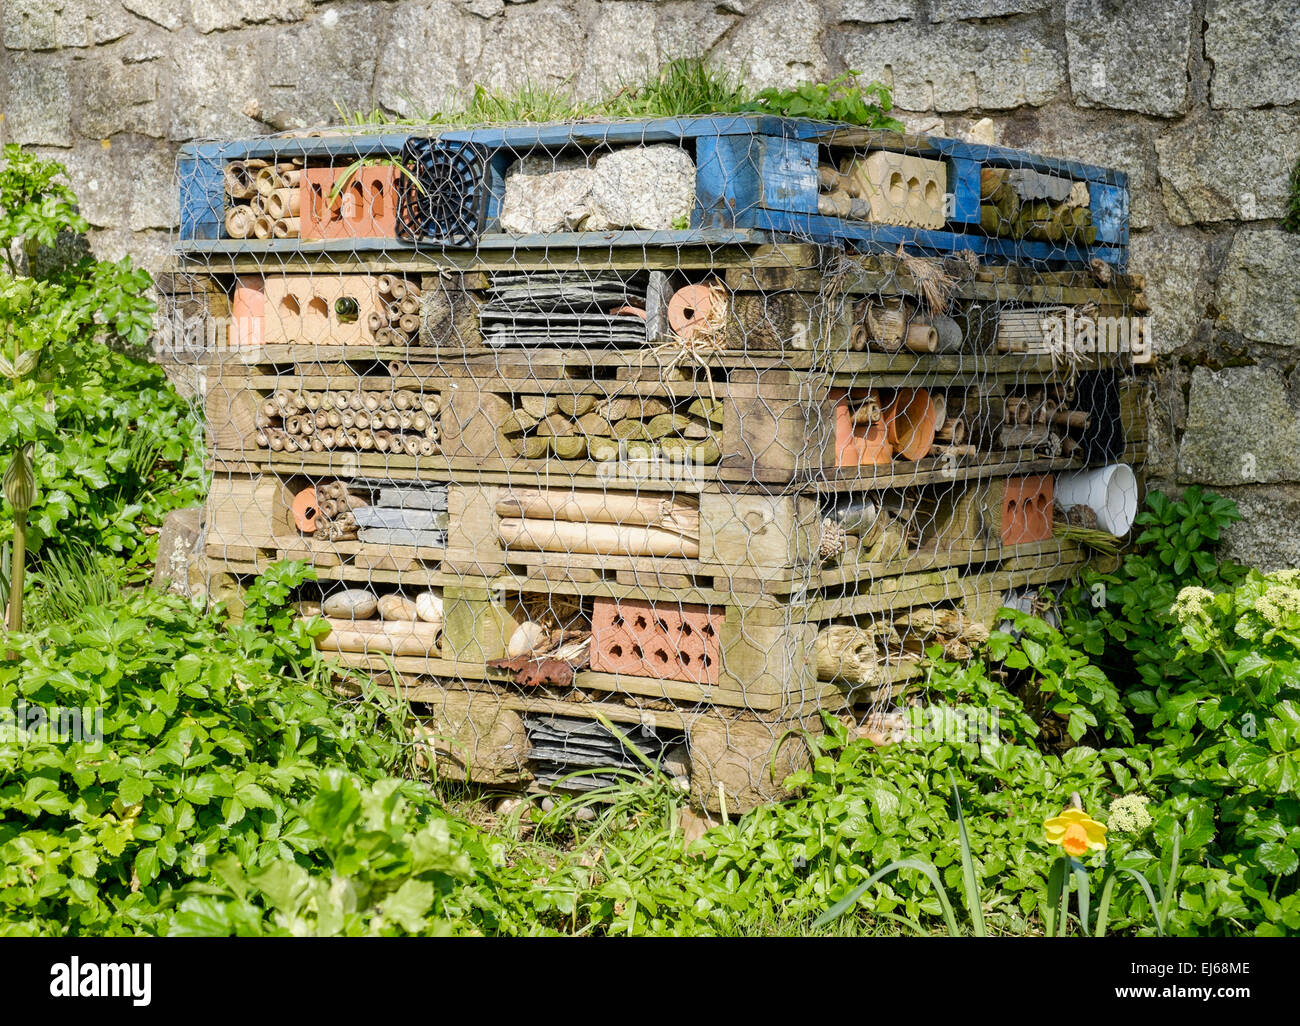 Un hotel de bichos. Una pila de viejas paletas llenas de ladrillos, madera y otros objetos para atraer insectos como abejas solitarias y escarabajos Foto de stock